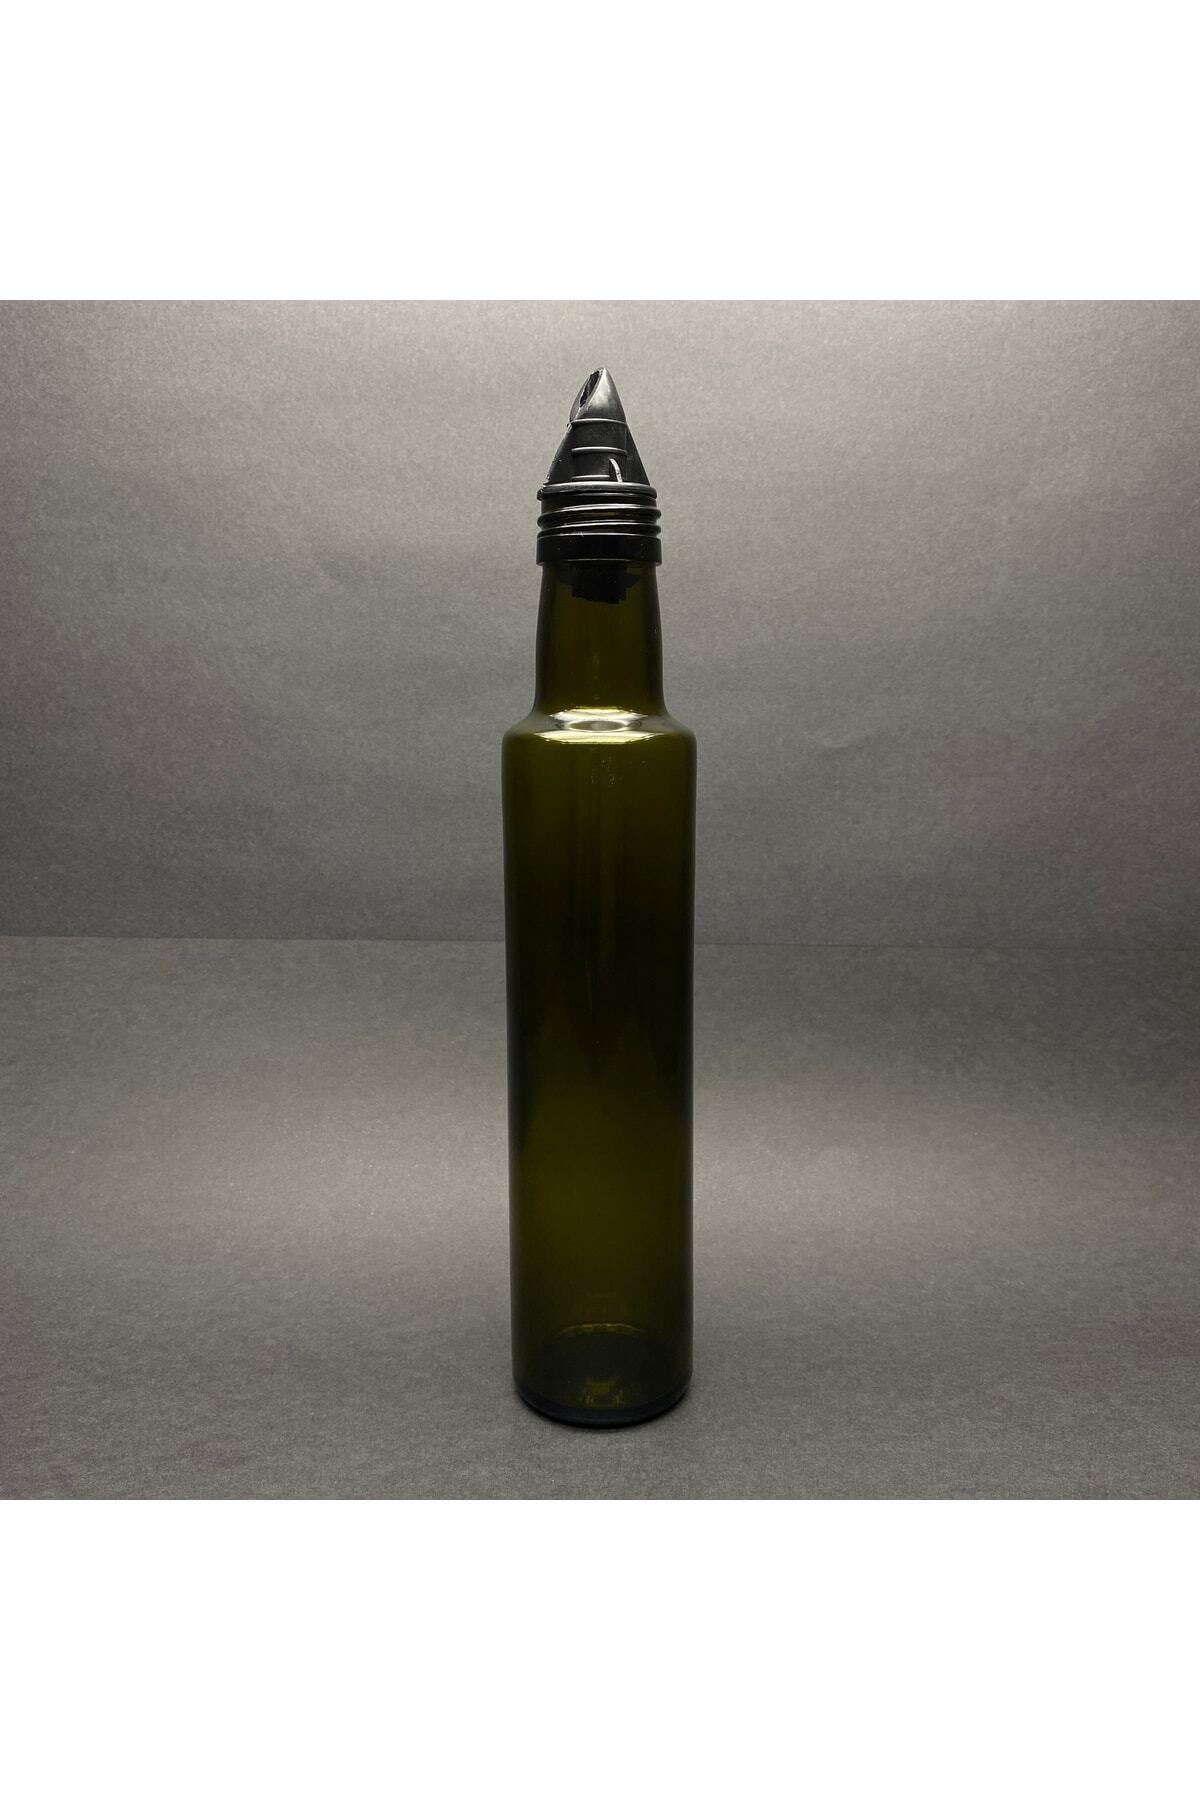 Pause Art Home 250 Cc Dorika Yeşil Cam Şişe - Siyah Plastik Yağdanlık Tıpalı - 250 ml Yağ Şişesi - Sirke Şişesi 70a